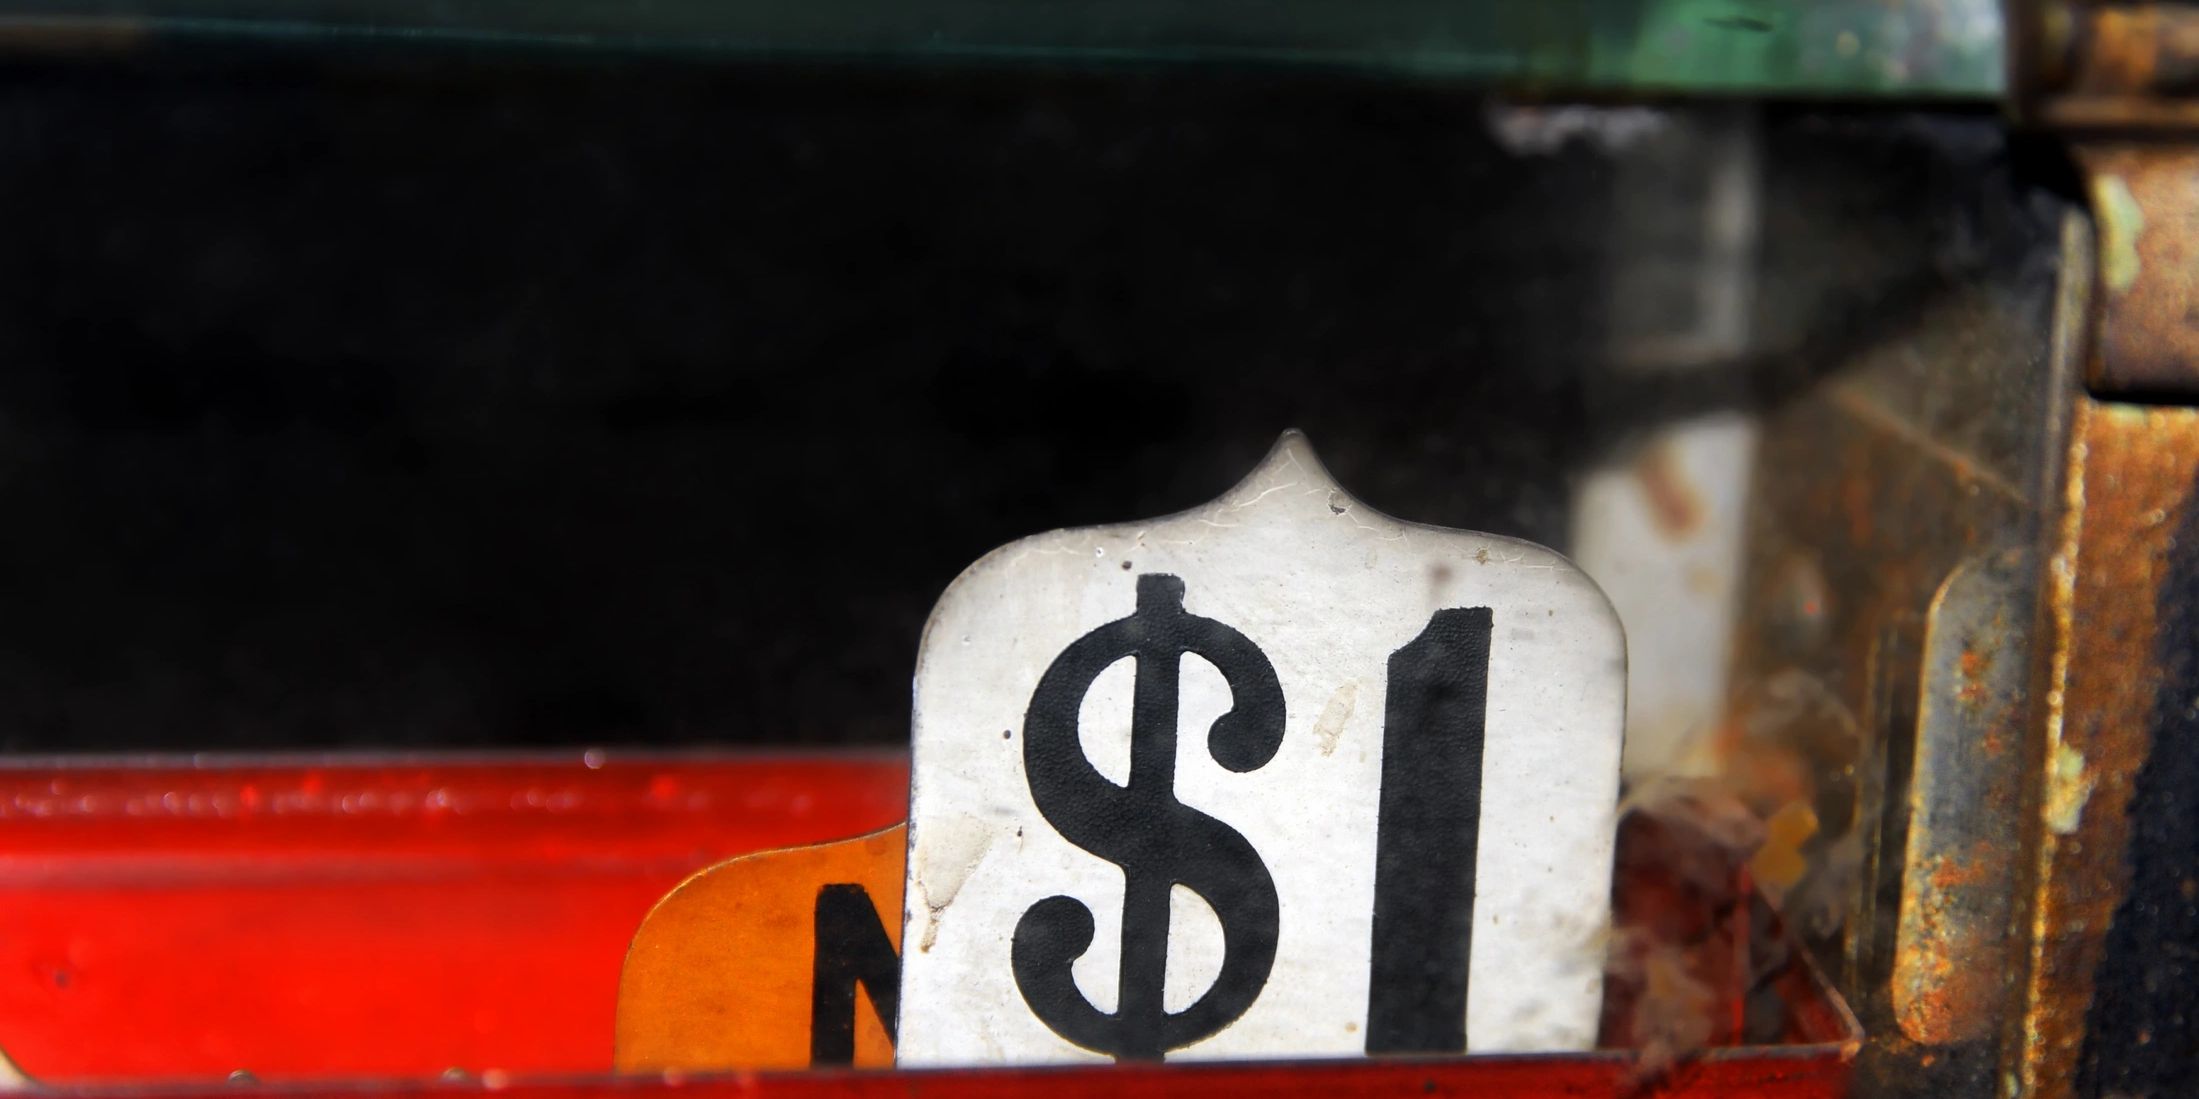 A vintage cash register $1 sign. 